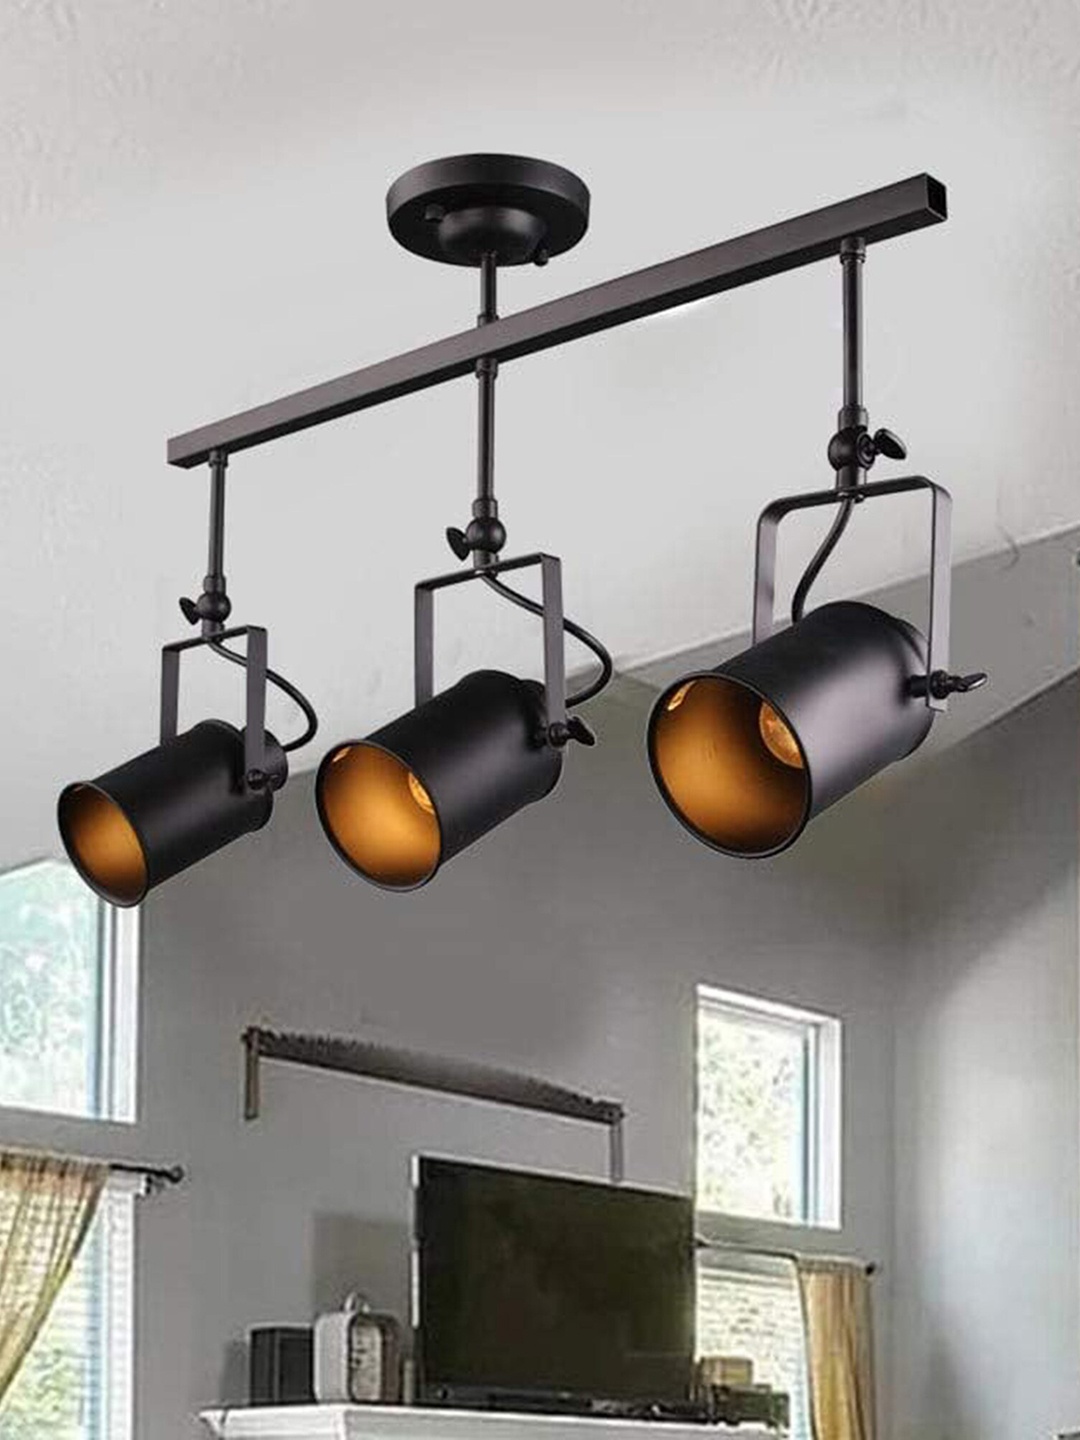 

Homesake Black 3-Light Track Lighting Kit Ceiling Lamp